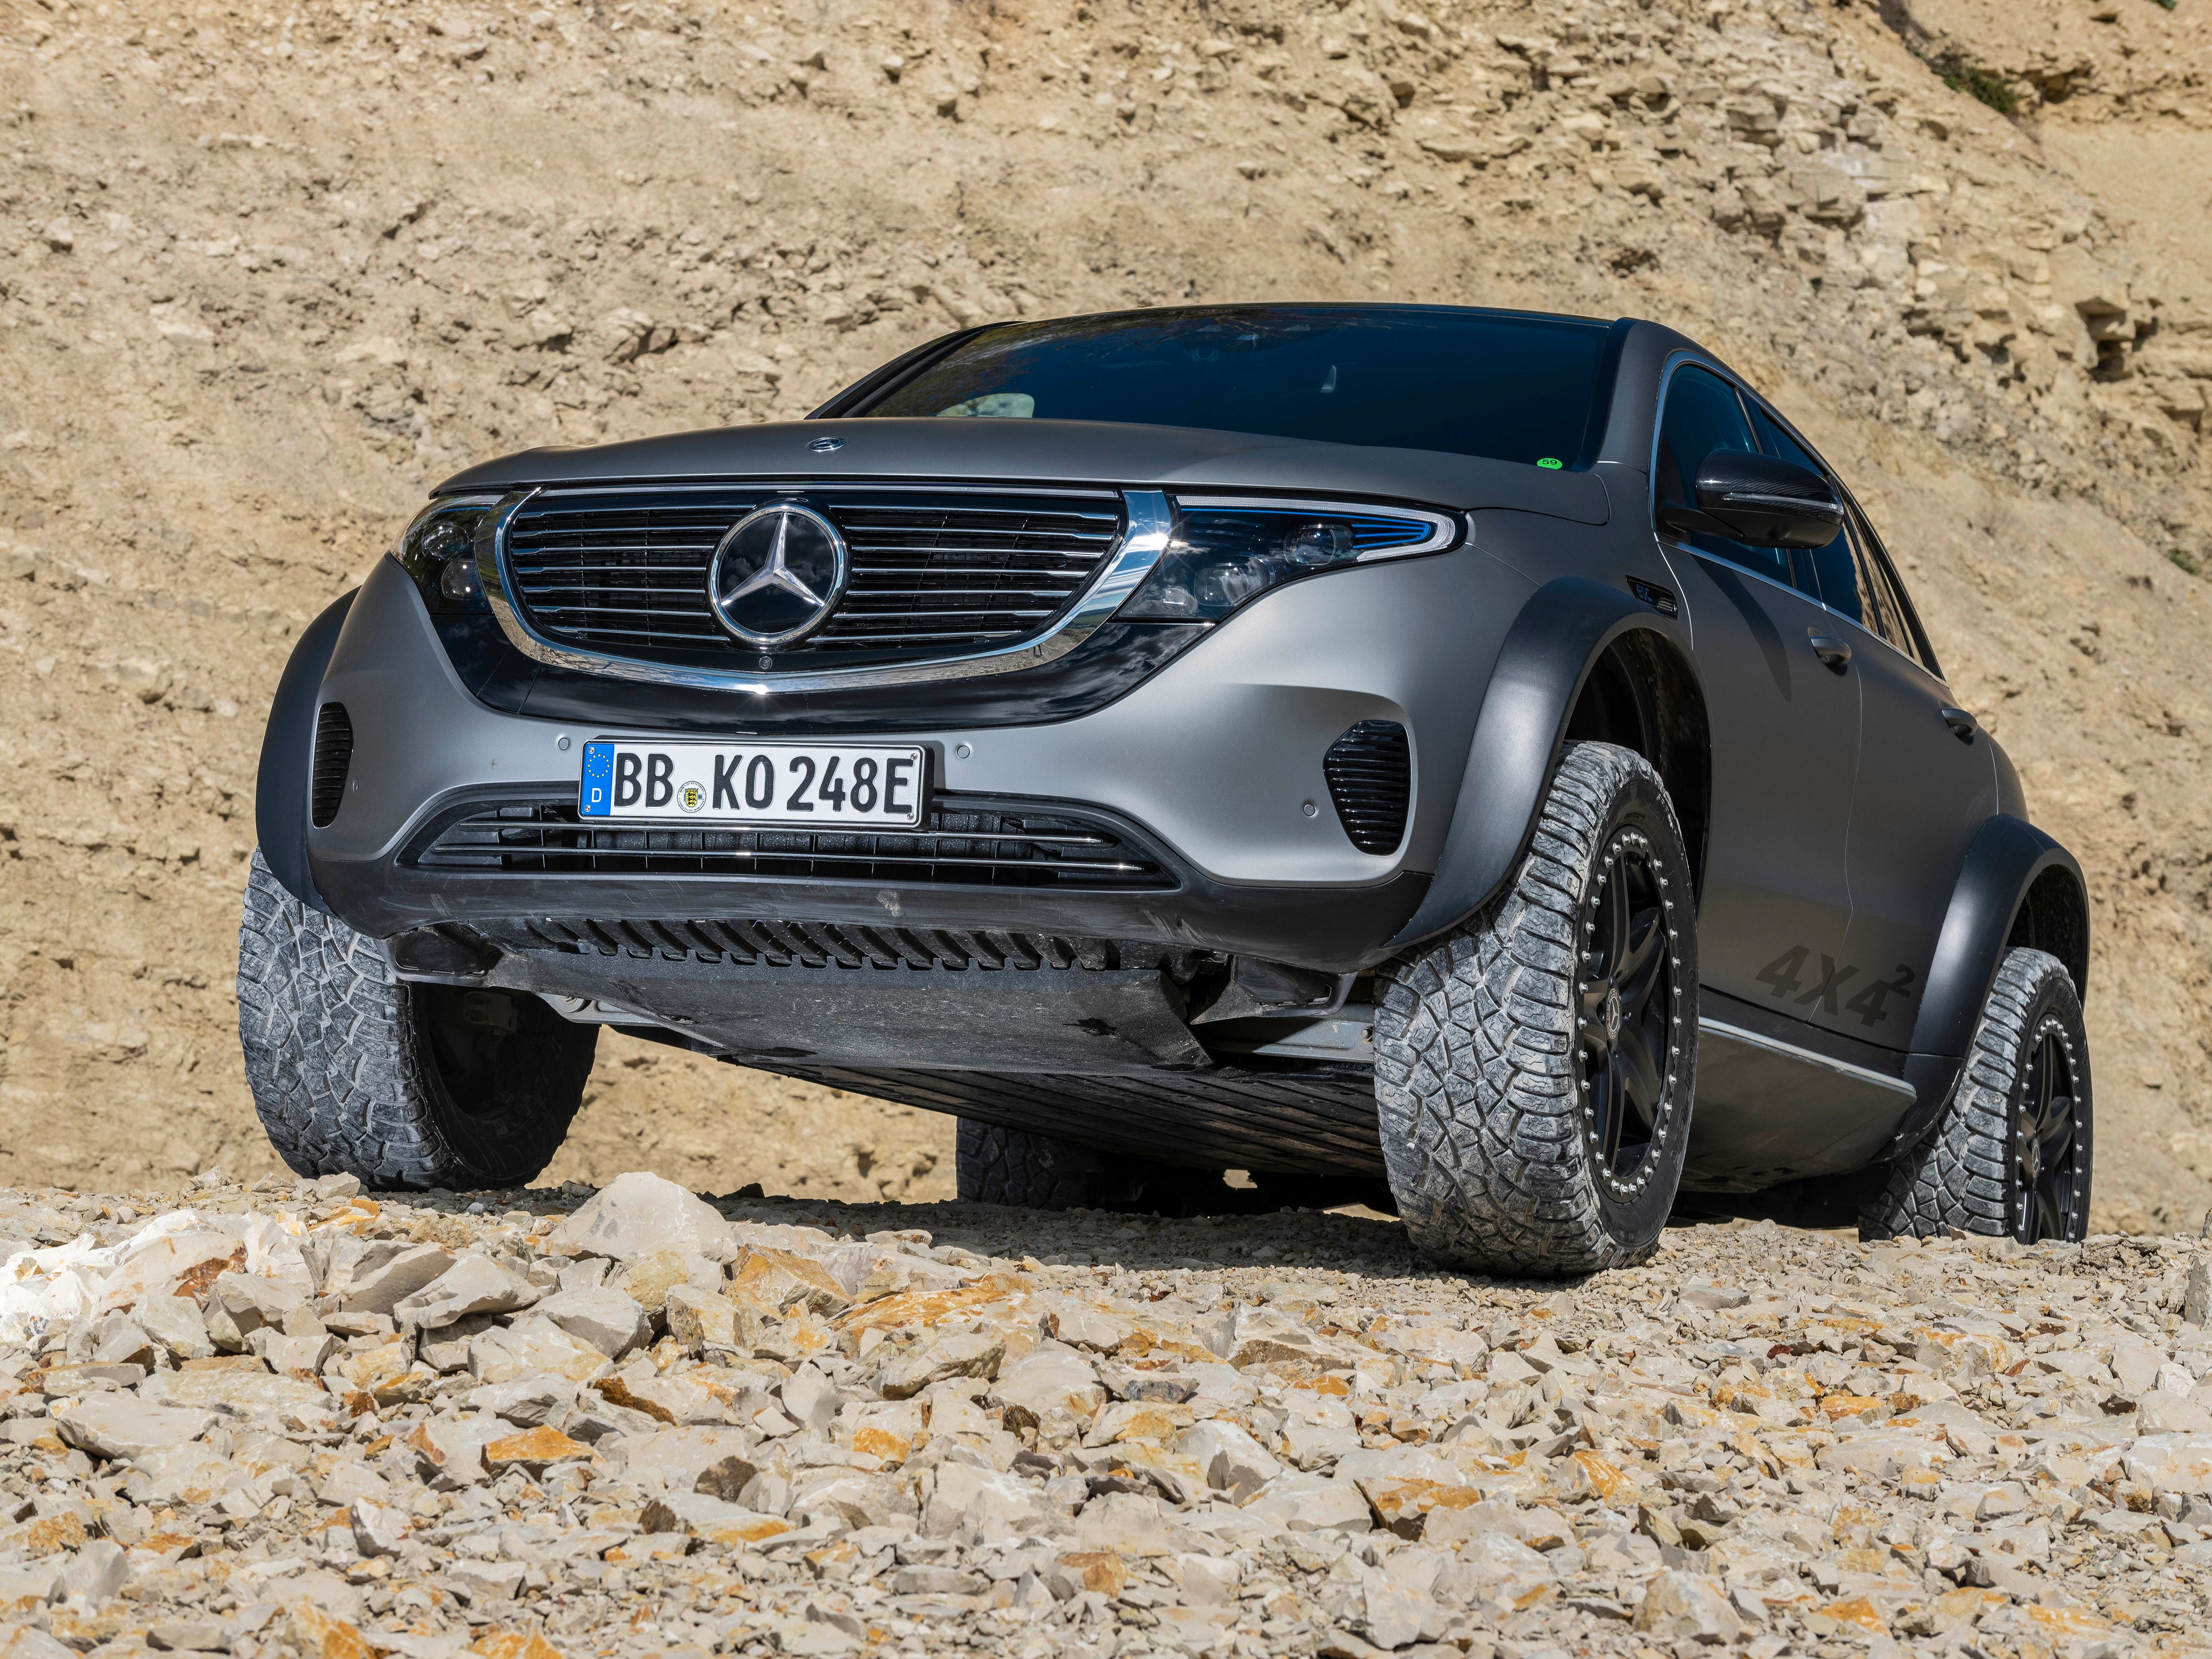 2020 Mercedes-Benz EQC 4x4²